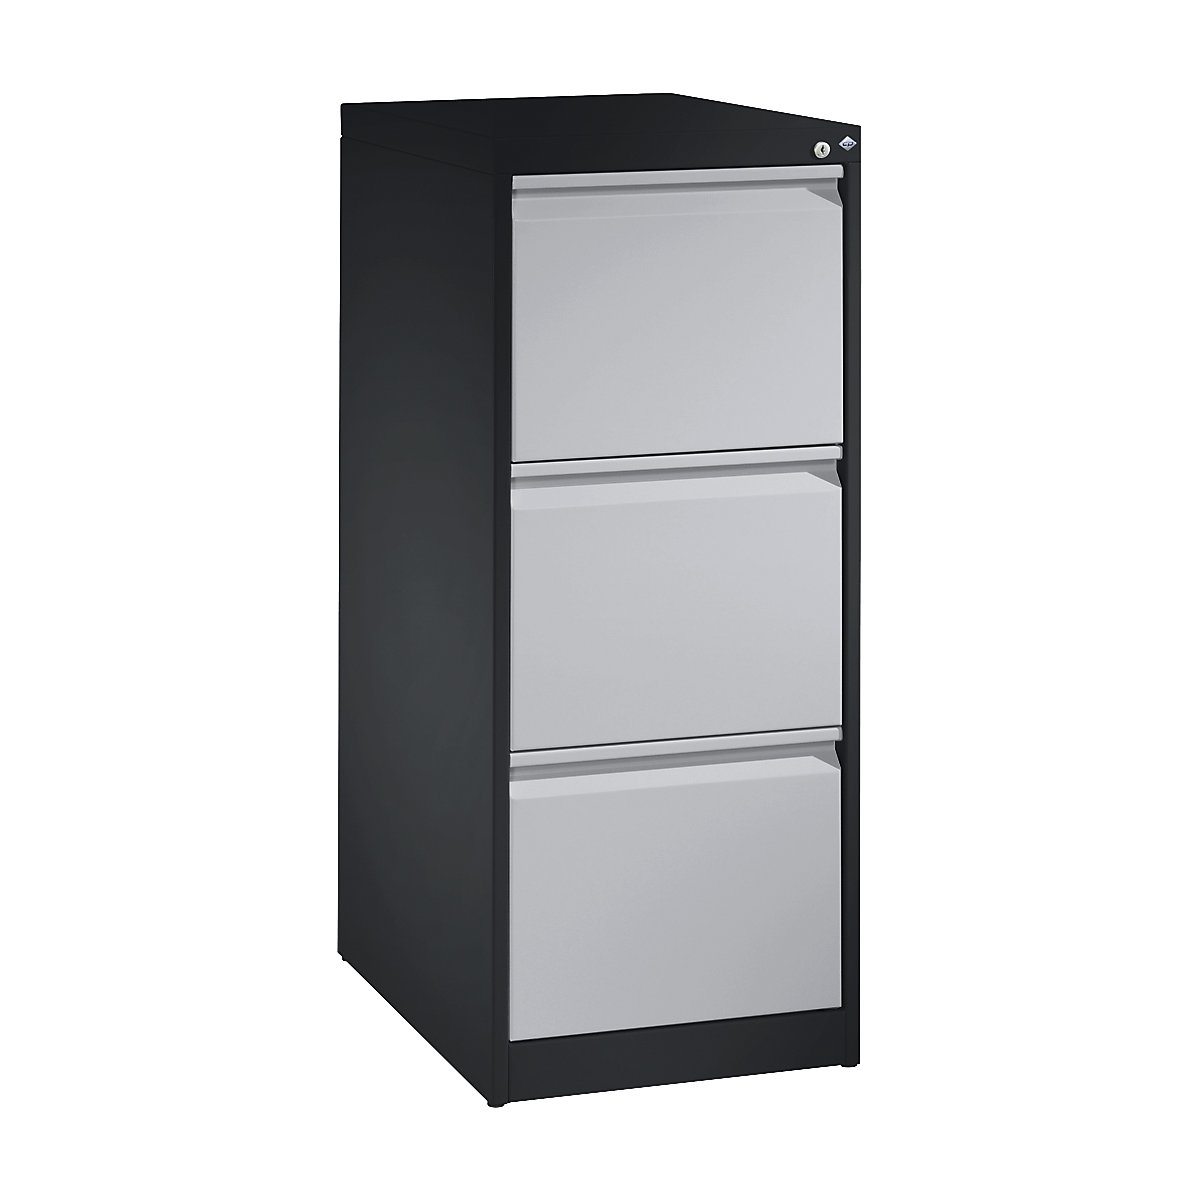 C+P – ACURADO suspension filing cabinet, 1 track, 3 drawers, black grey / white aluminium